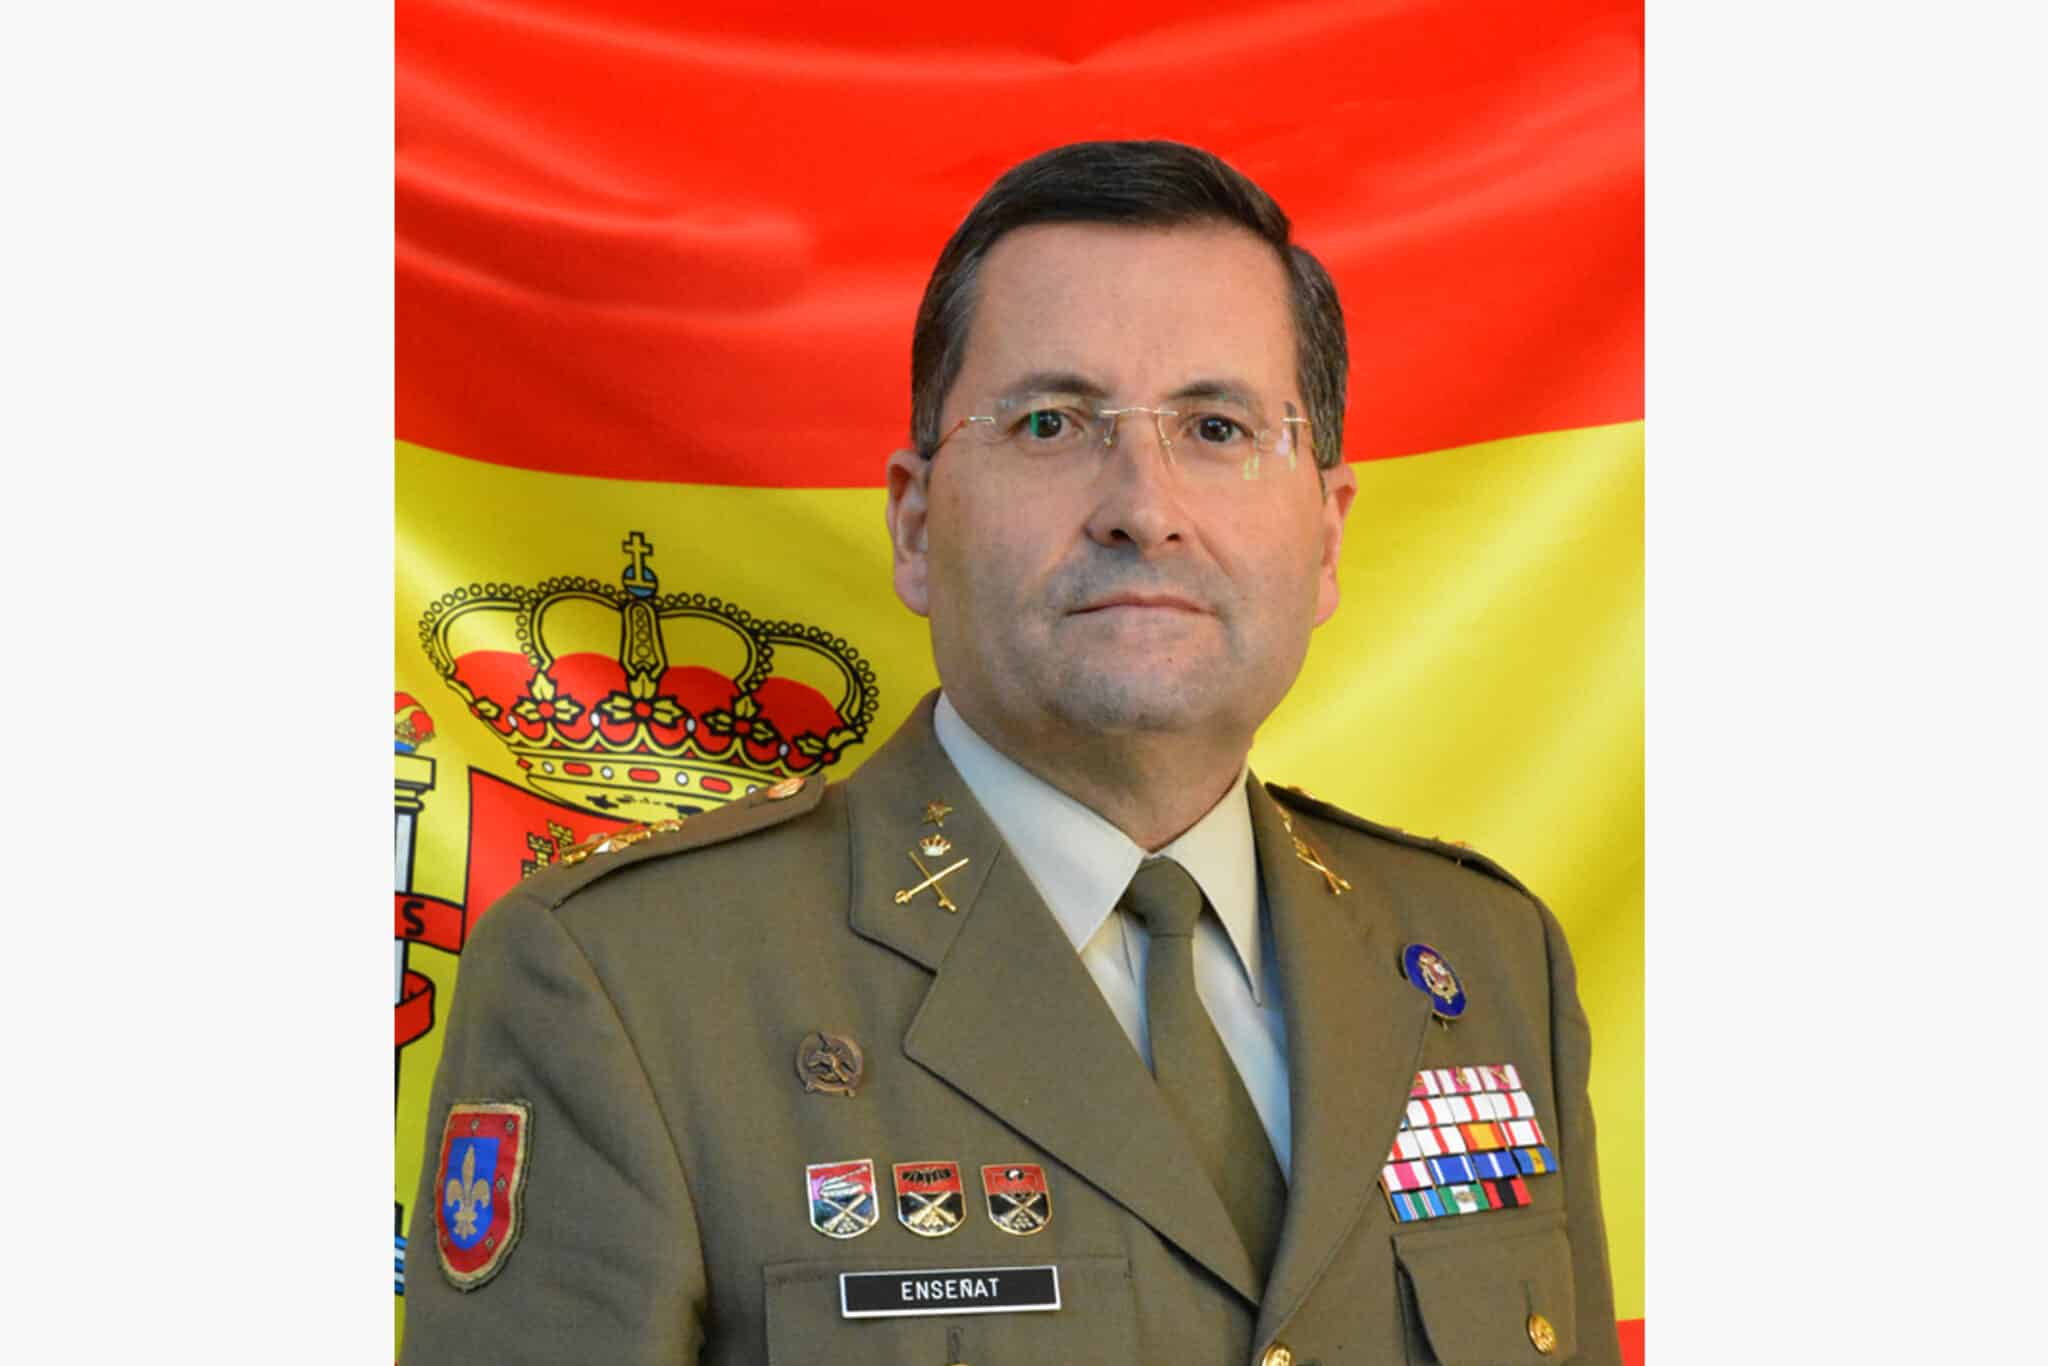 El teniente general Enseñat, nuevo jefe del Ejército de Tierra.